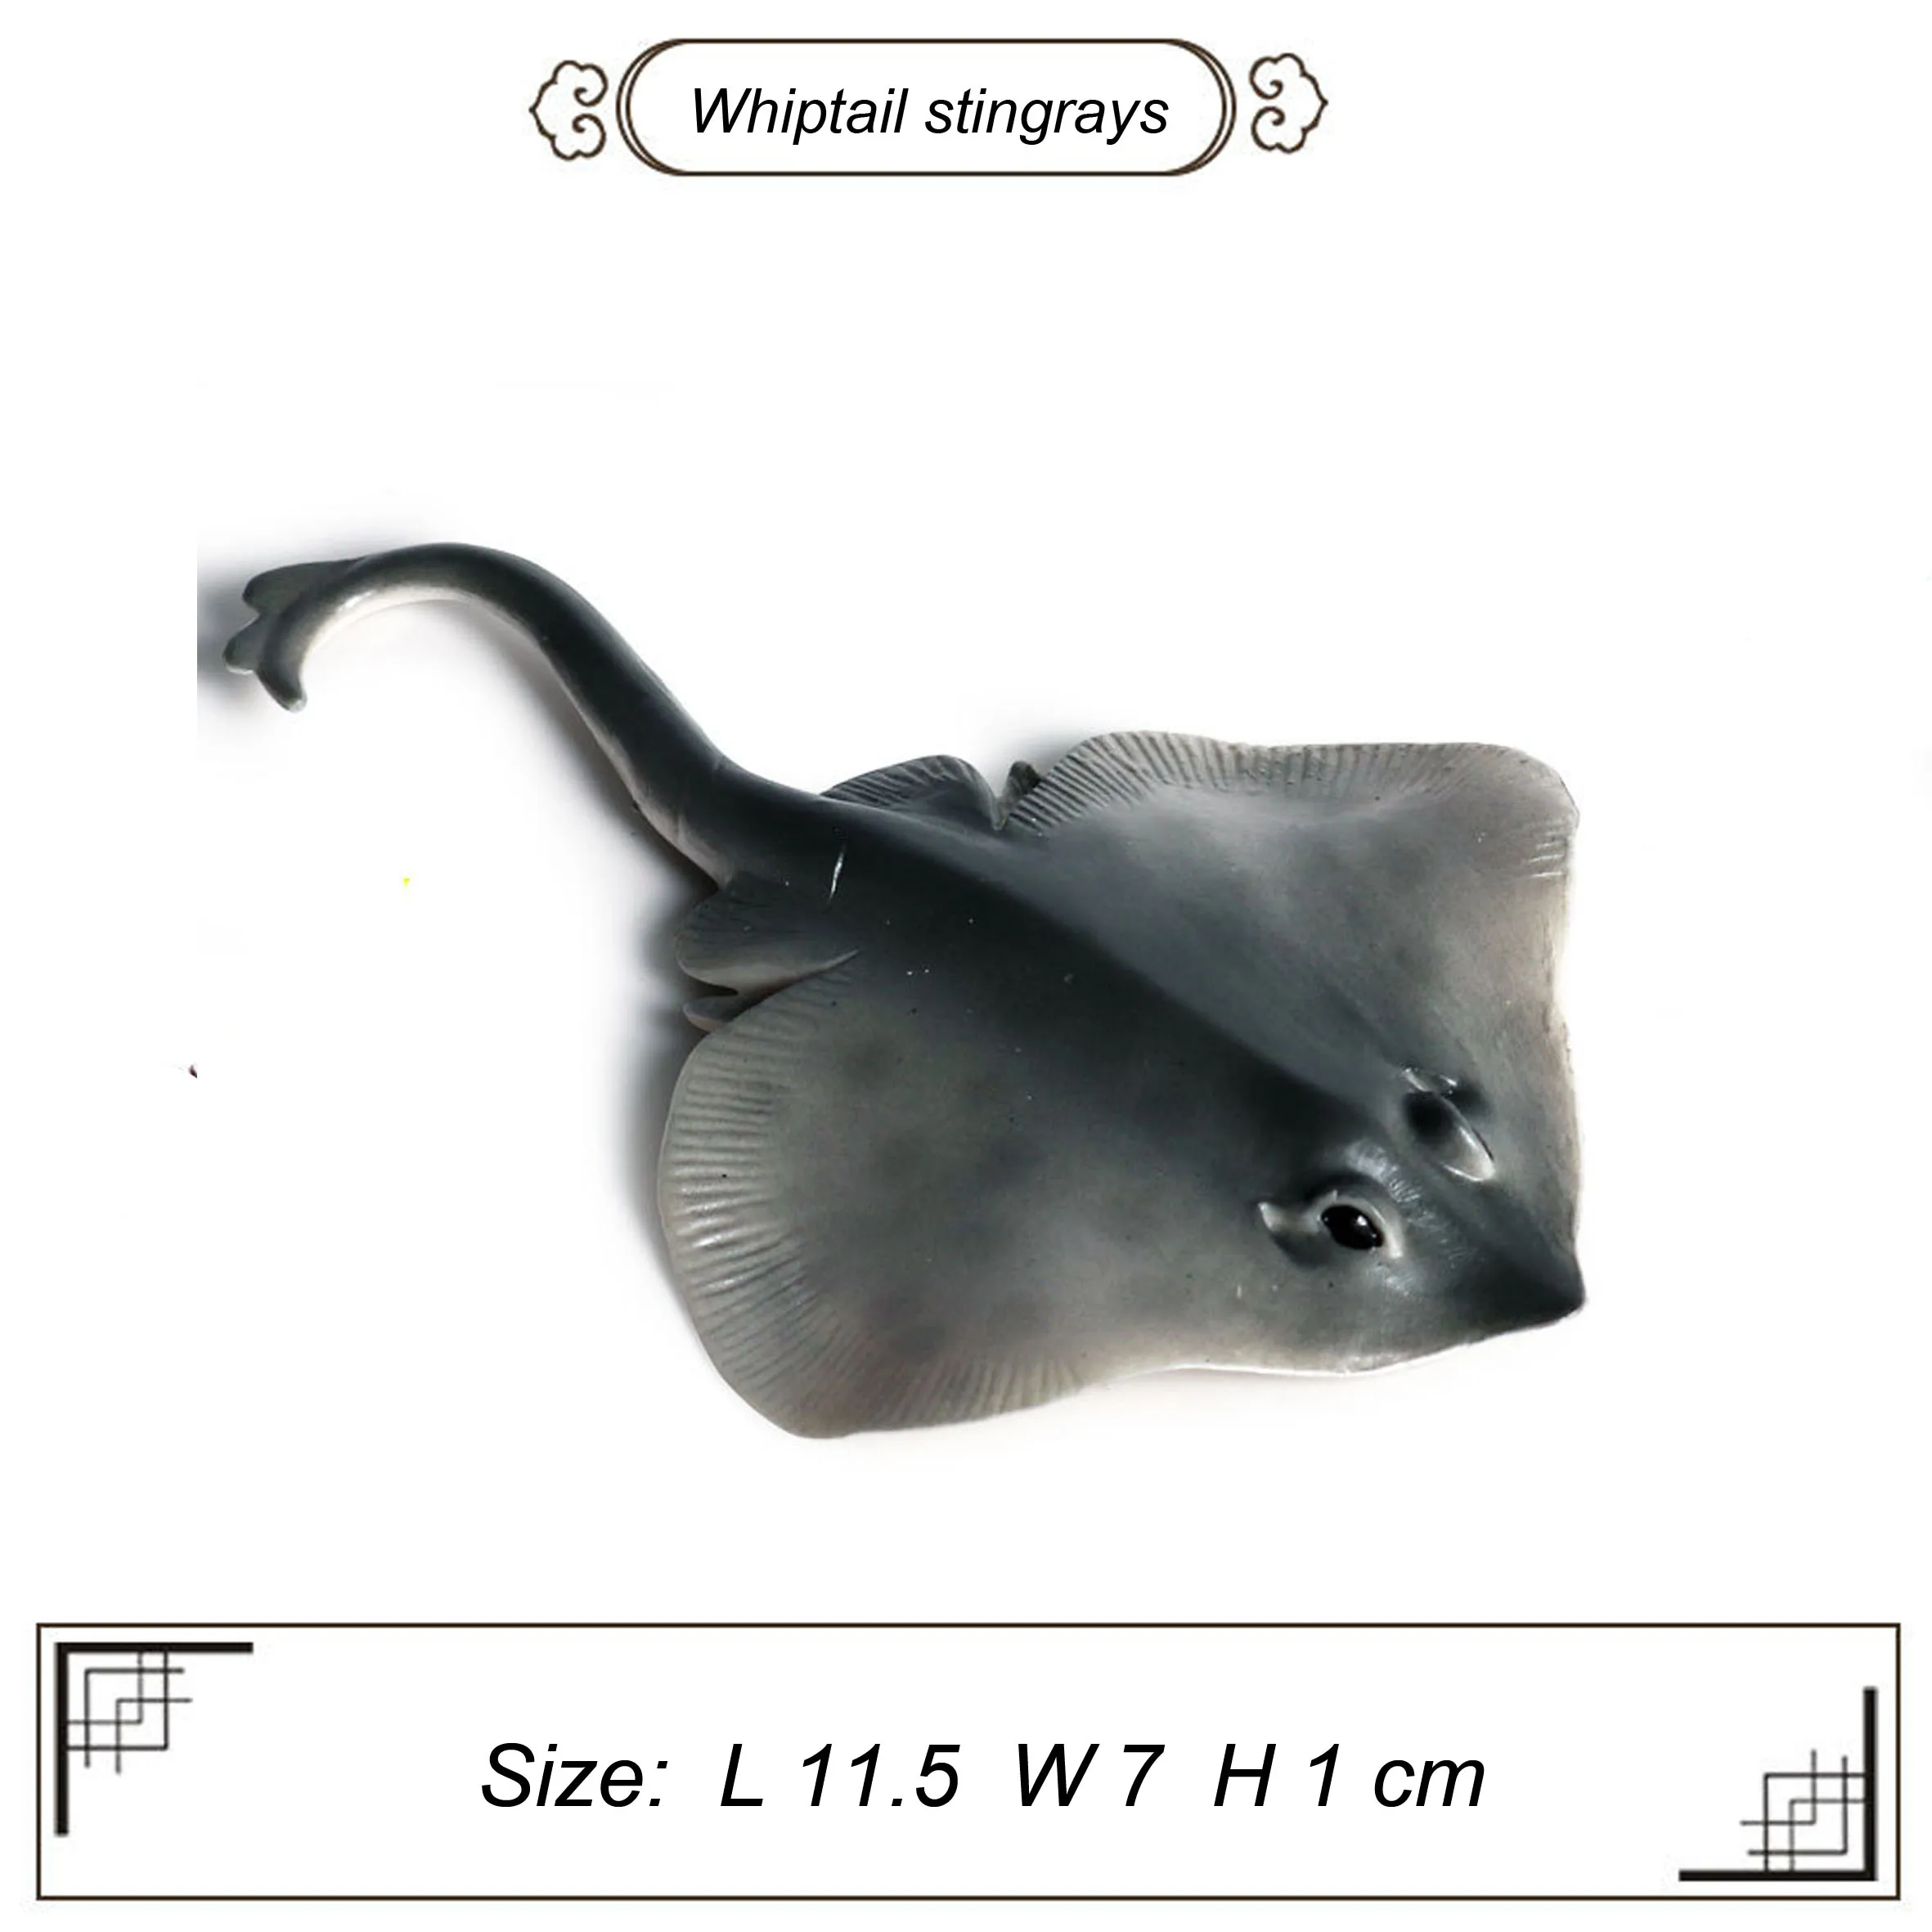 1set2pcs серого цвета из гладкой черной пунктирной линии ассортимента моделей whiptail ската Популярные морской рыбы игрушки для образования детей вечерние пользу